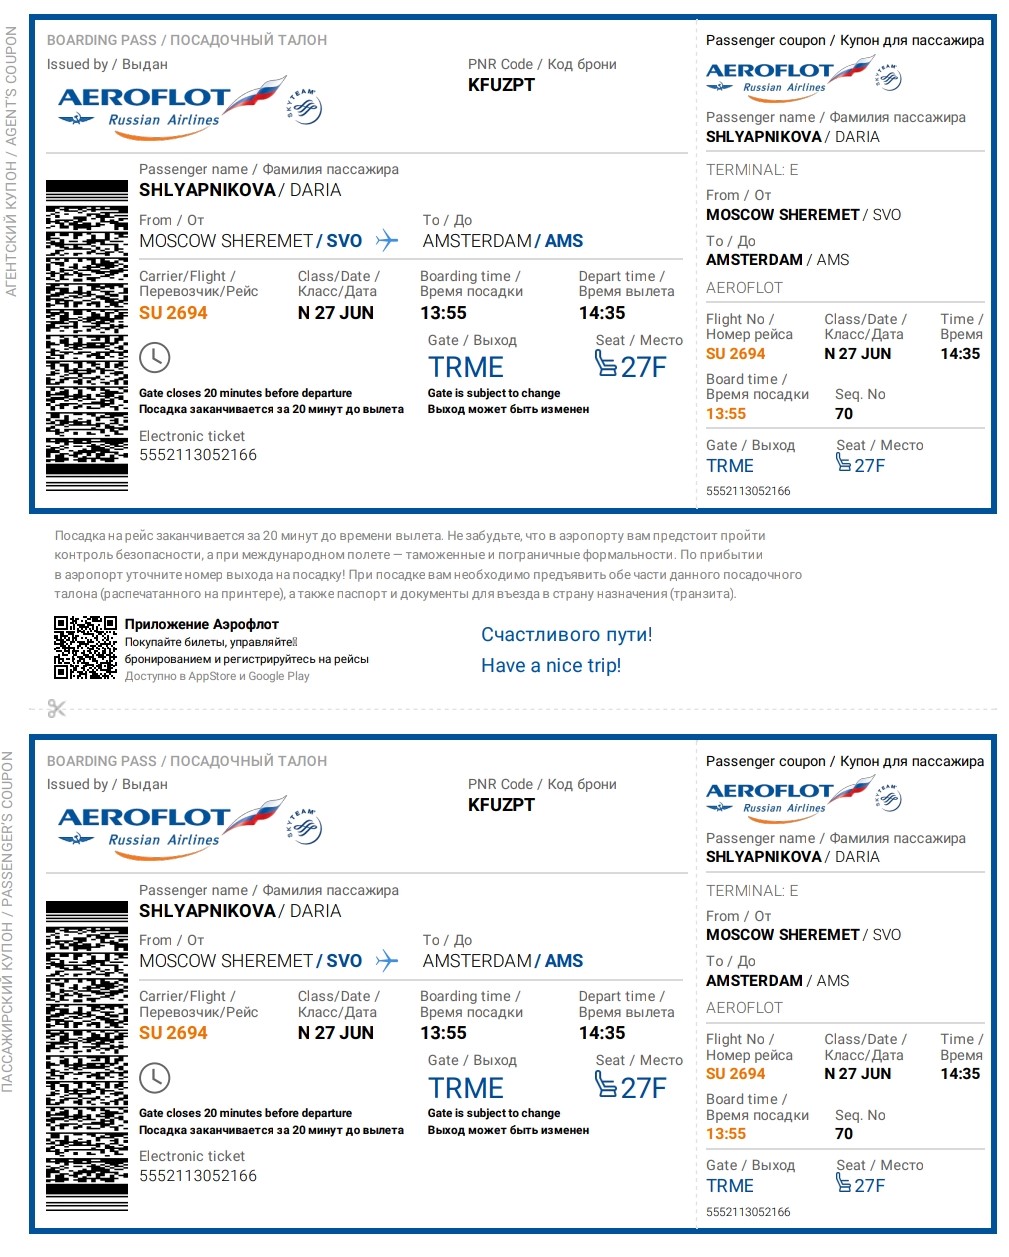 Мой электронный билет на самолет Москва — Амстердам. Я купила билет за 20 тысяч, а ближе к дате фестиваля цены на прямые рейсы выросли в 2 раза